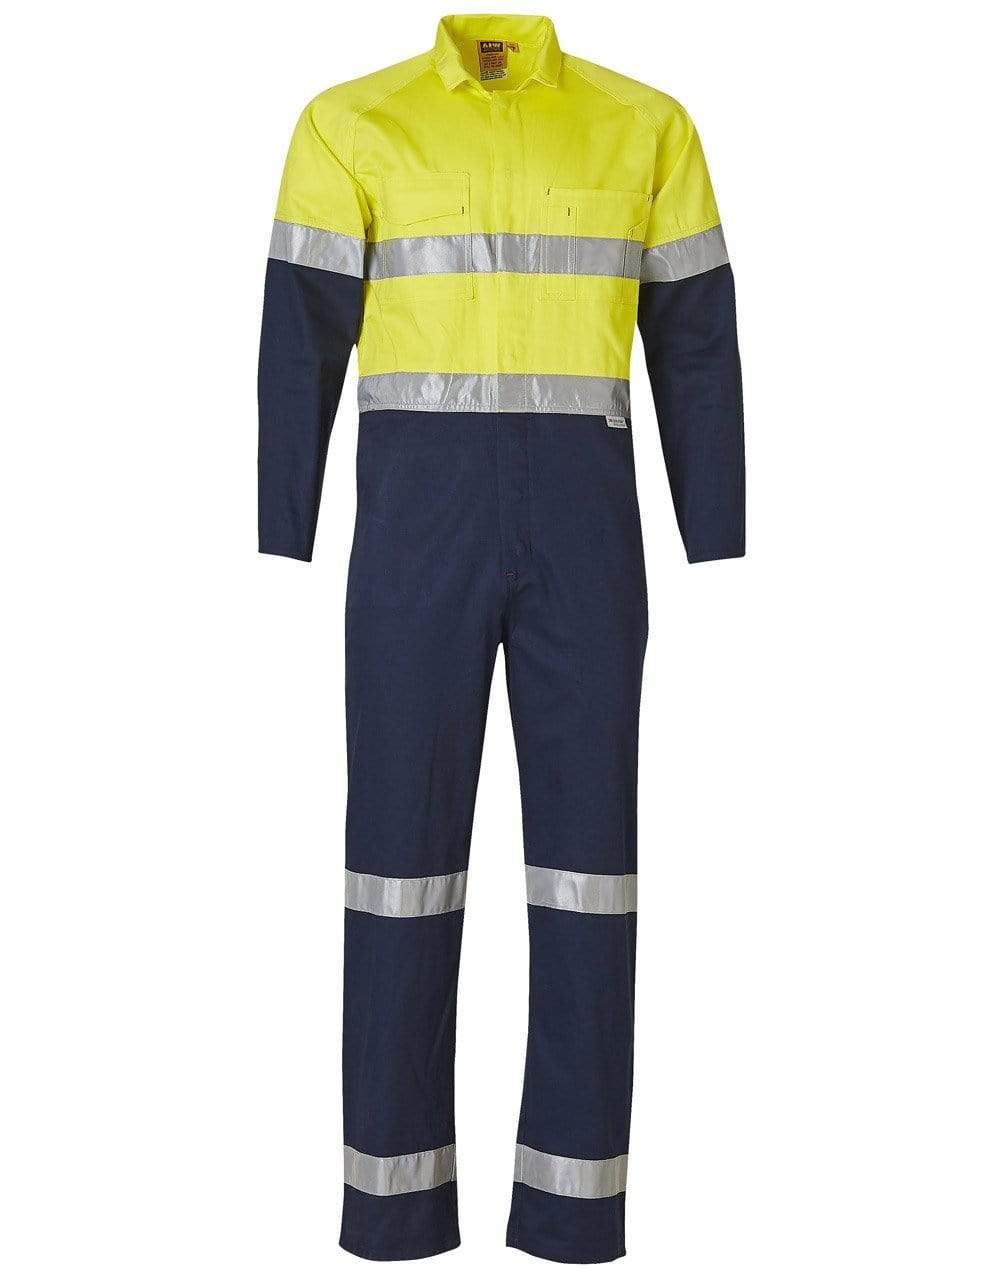 Men's Two Tone Coverall SW207 Work Wear Australian Industrial Wear 77R Yellow/Navy 